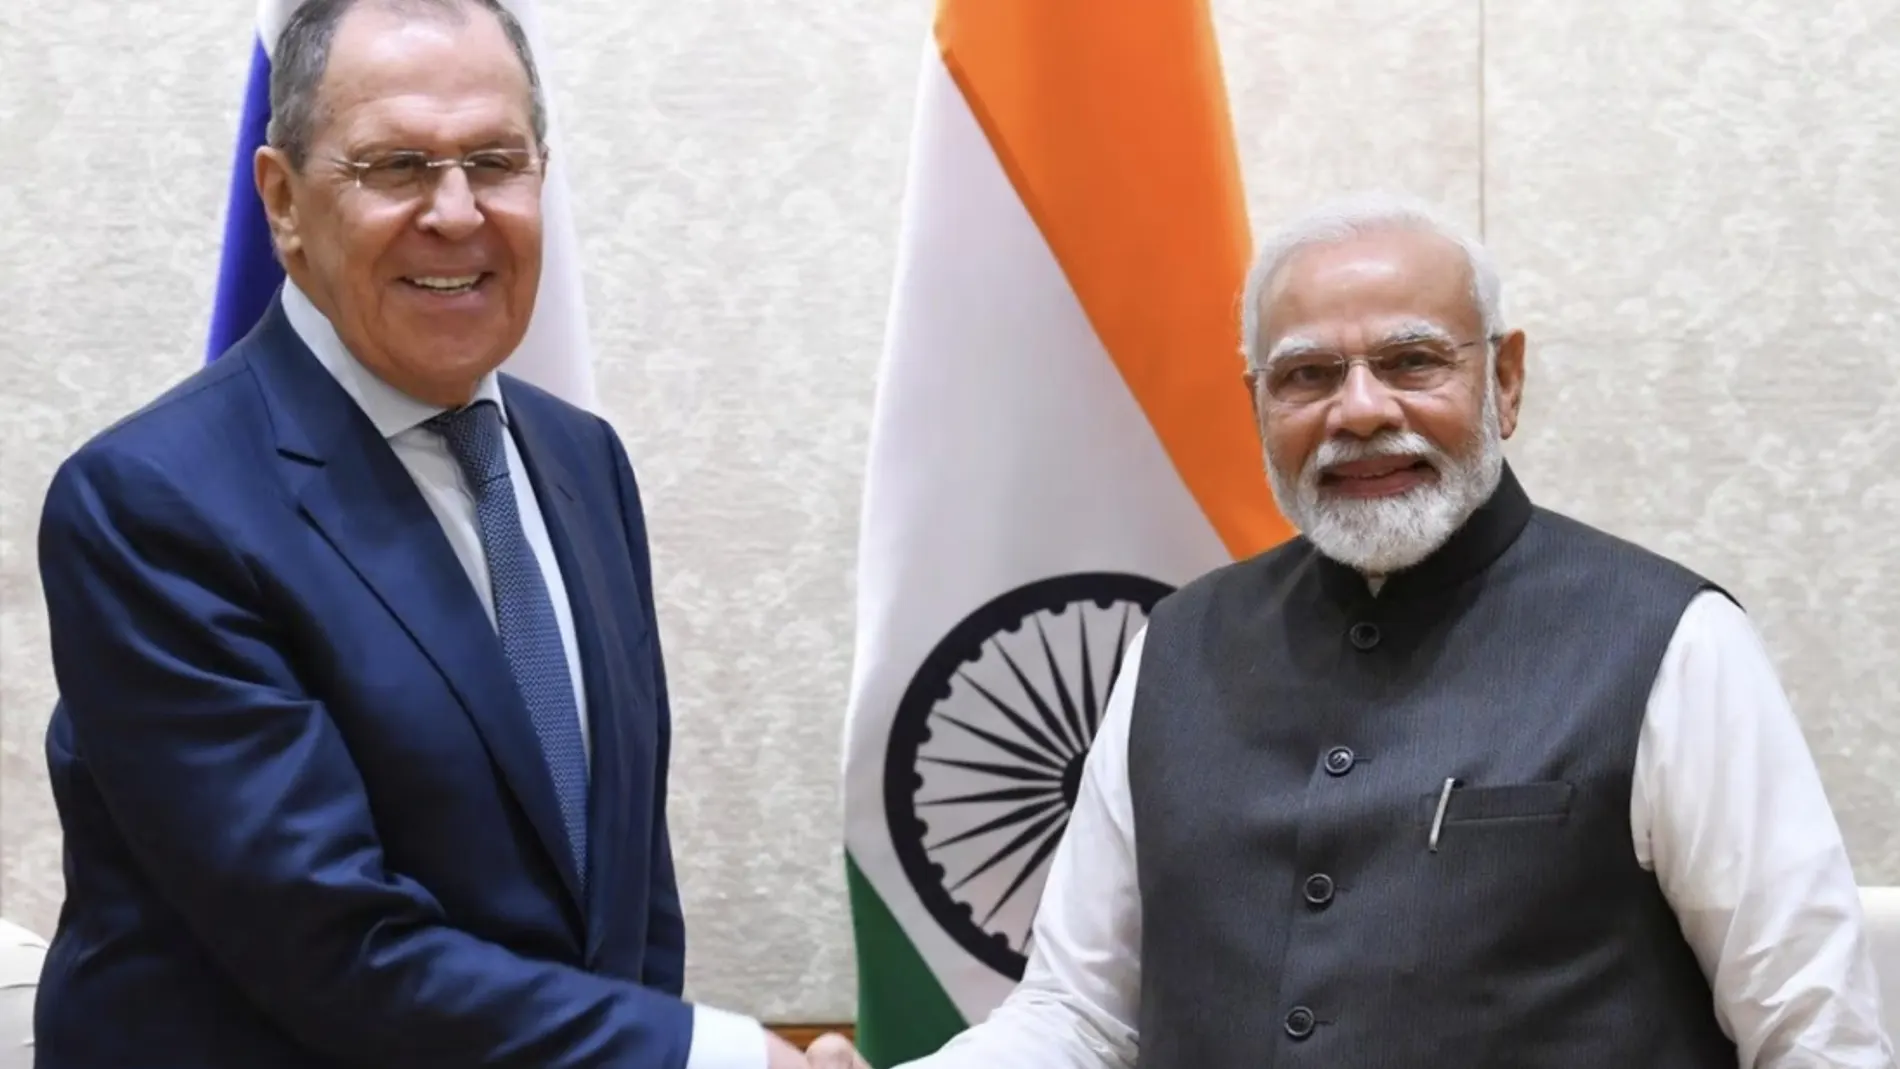 El ministro de Exteriores de Rusia, Sergei Lavrov, y el primer ministro indio, Narendra Modi, en una imagen de archivo en Nueva Delhi.